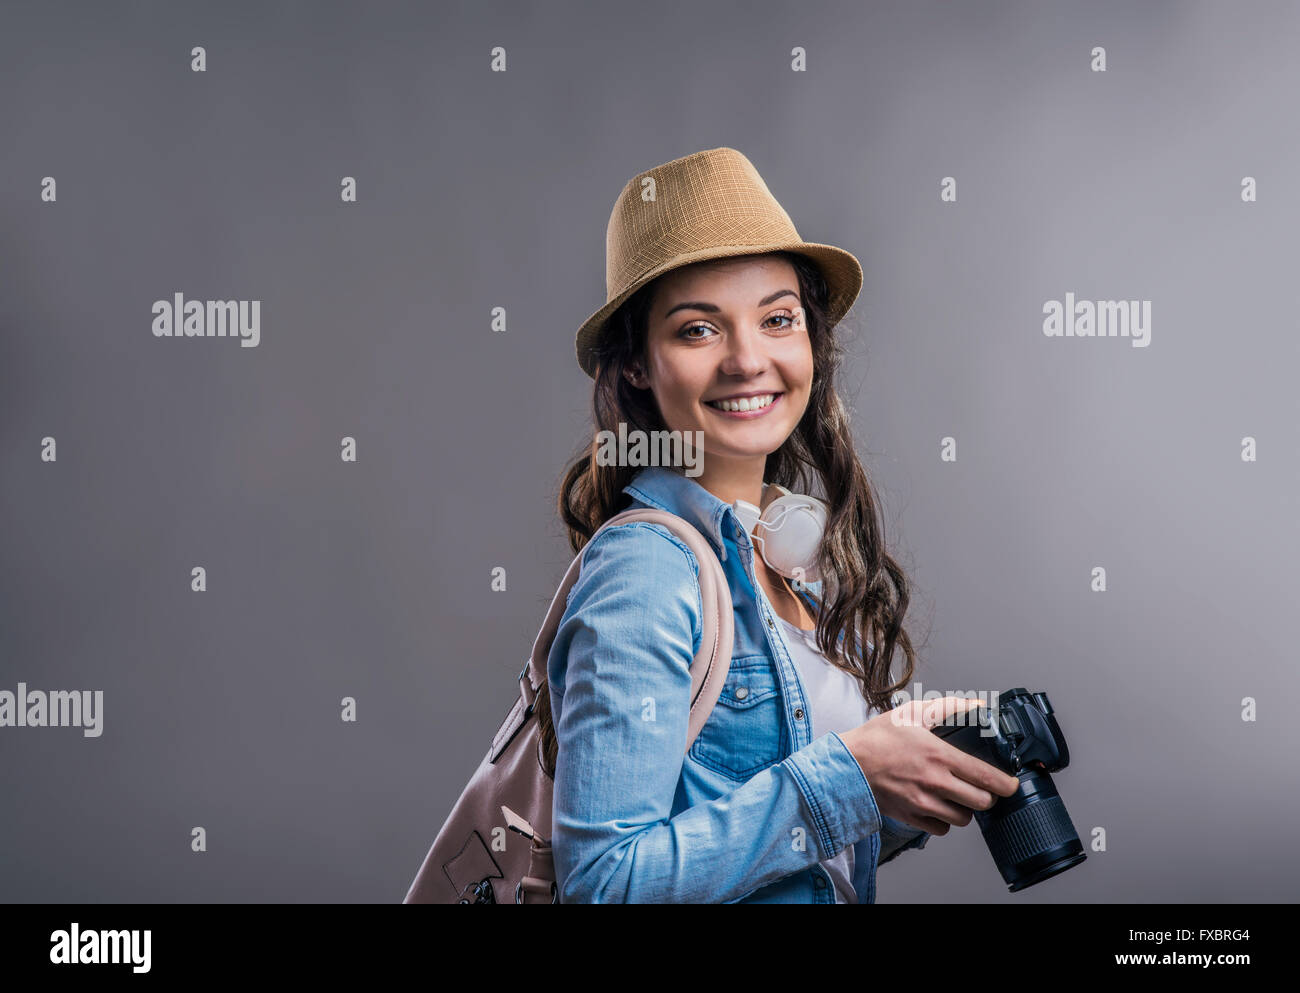 Tourist girl in denim shirt with camera, studio shot Stock Photo